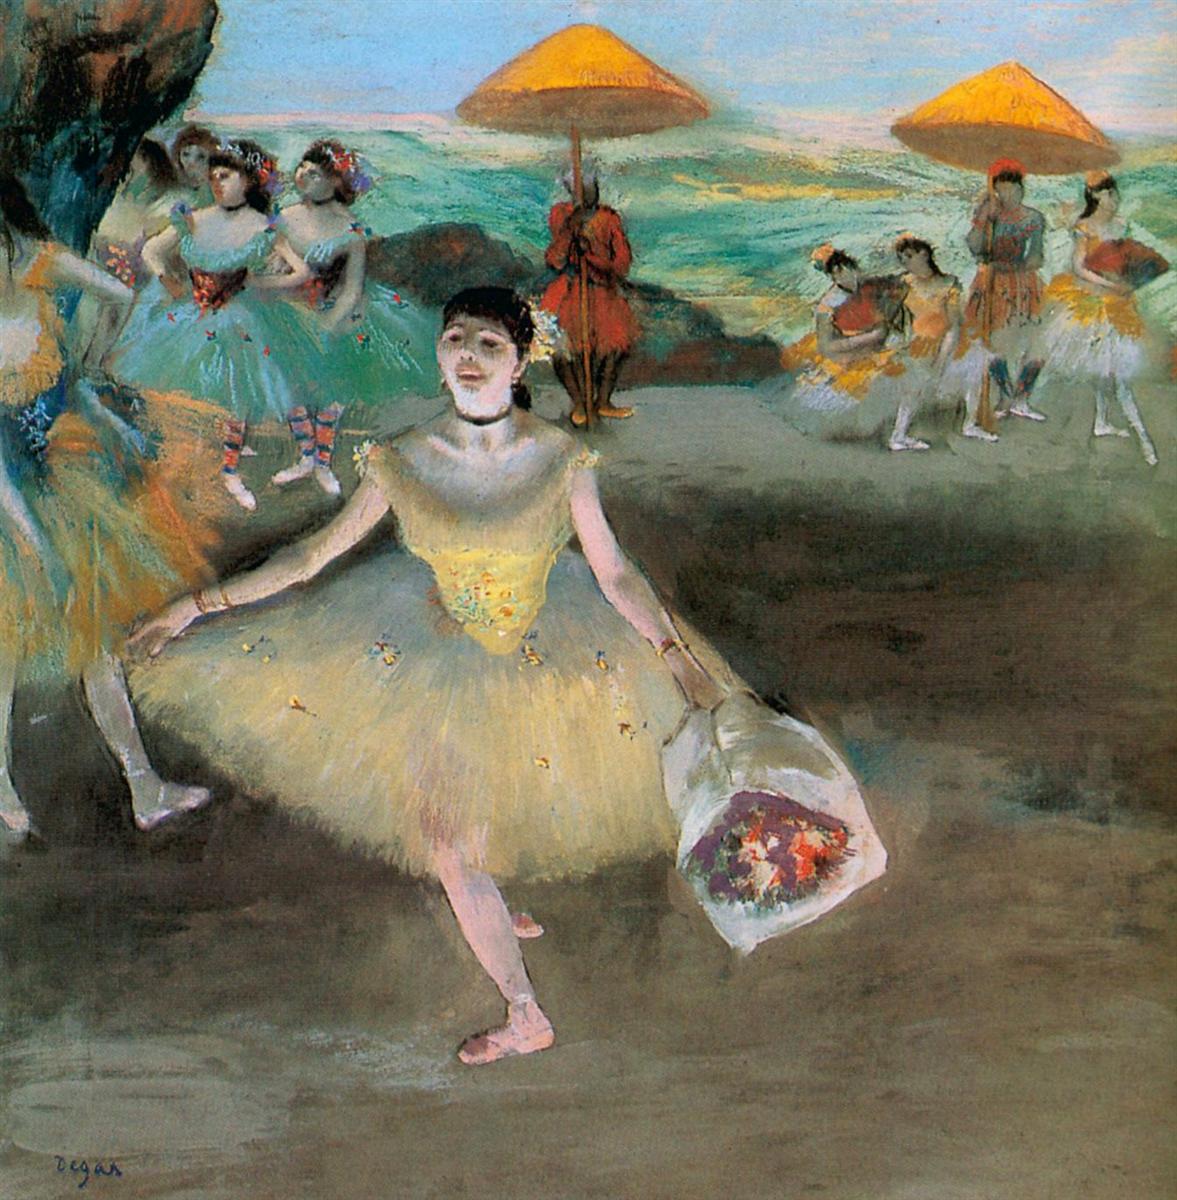 Edgar+Degas-1834-1917 (379).jpg